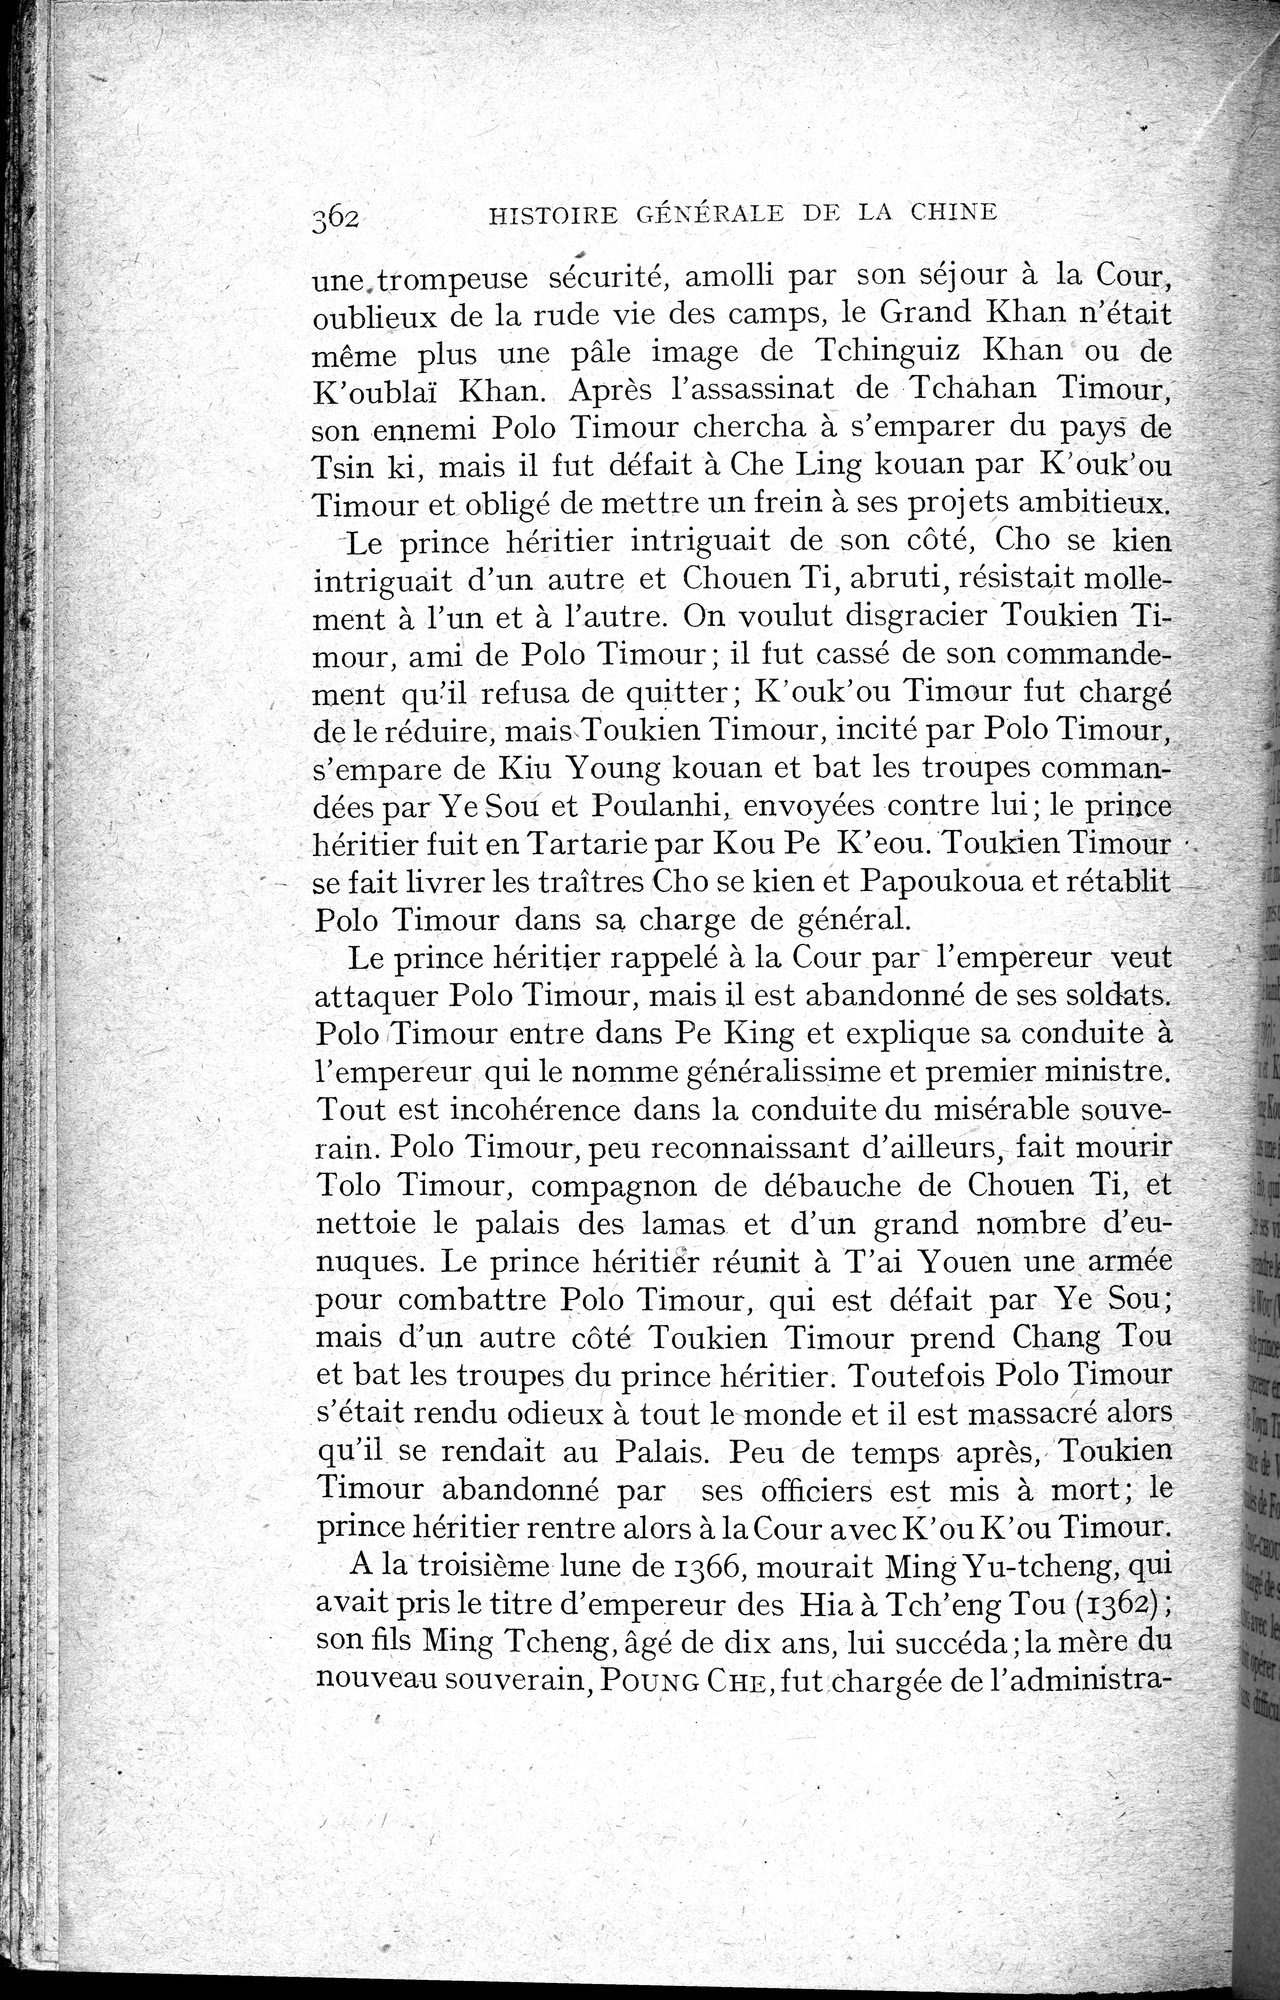 Histoire Générale de la Chine : vol.2 / Page 364 (Grayscale High Resolution Image)